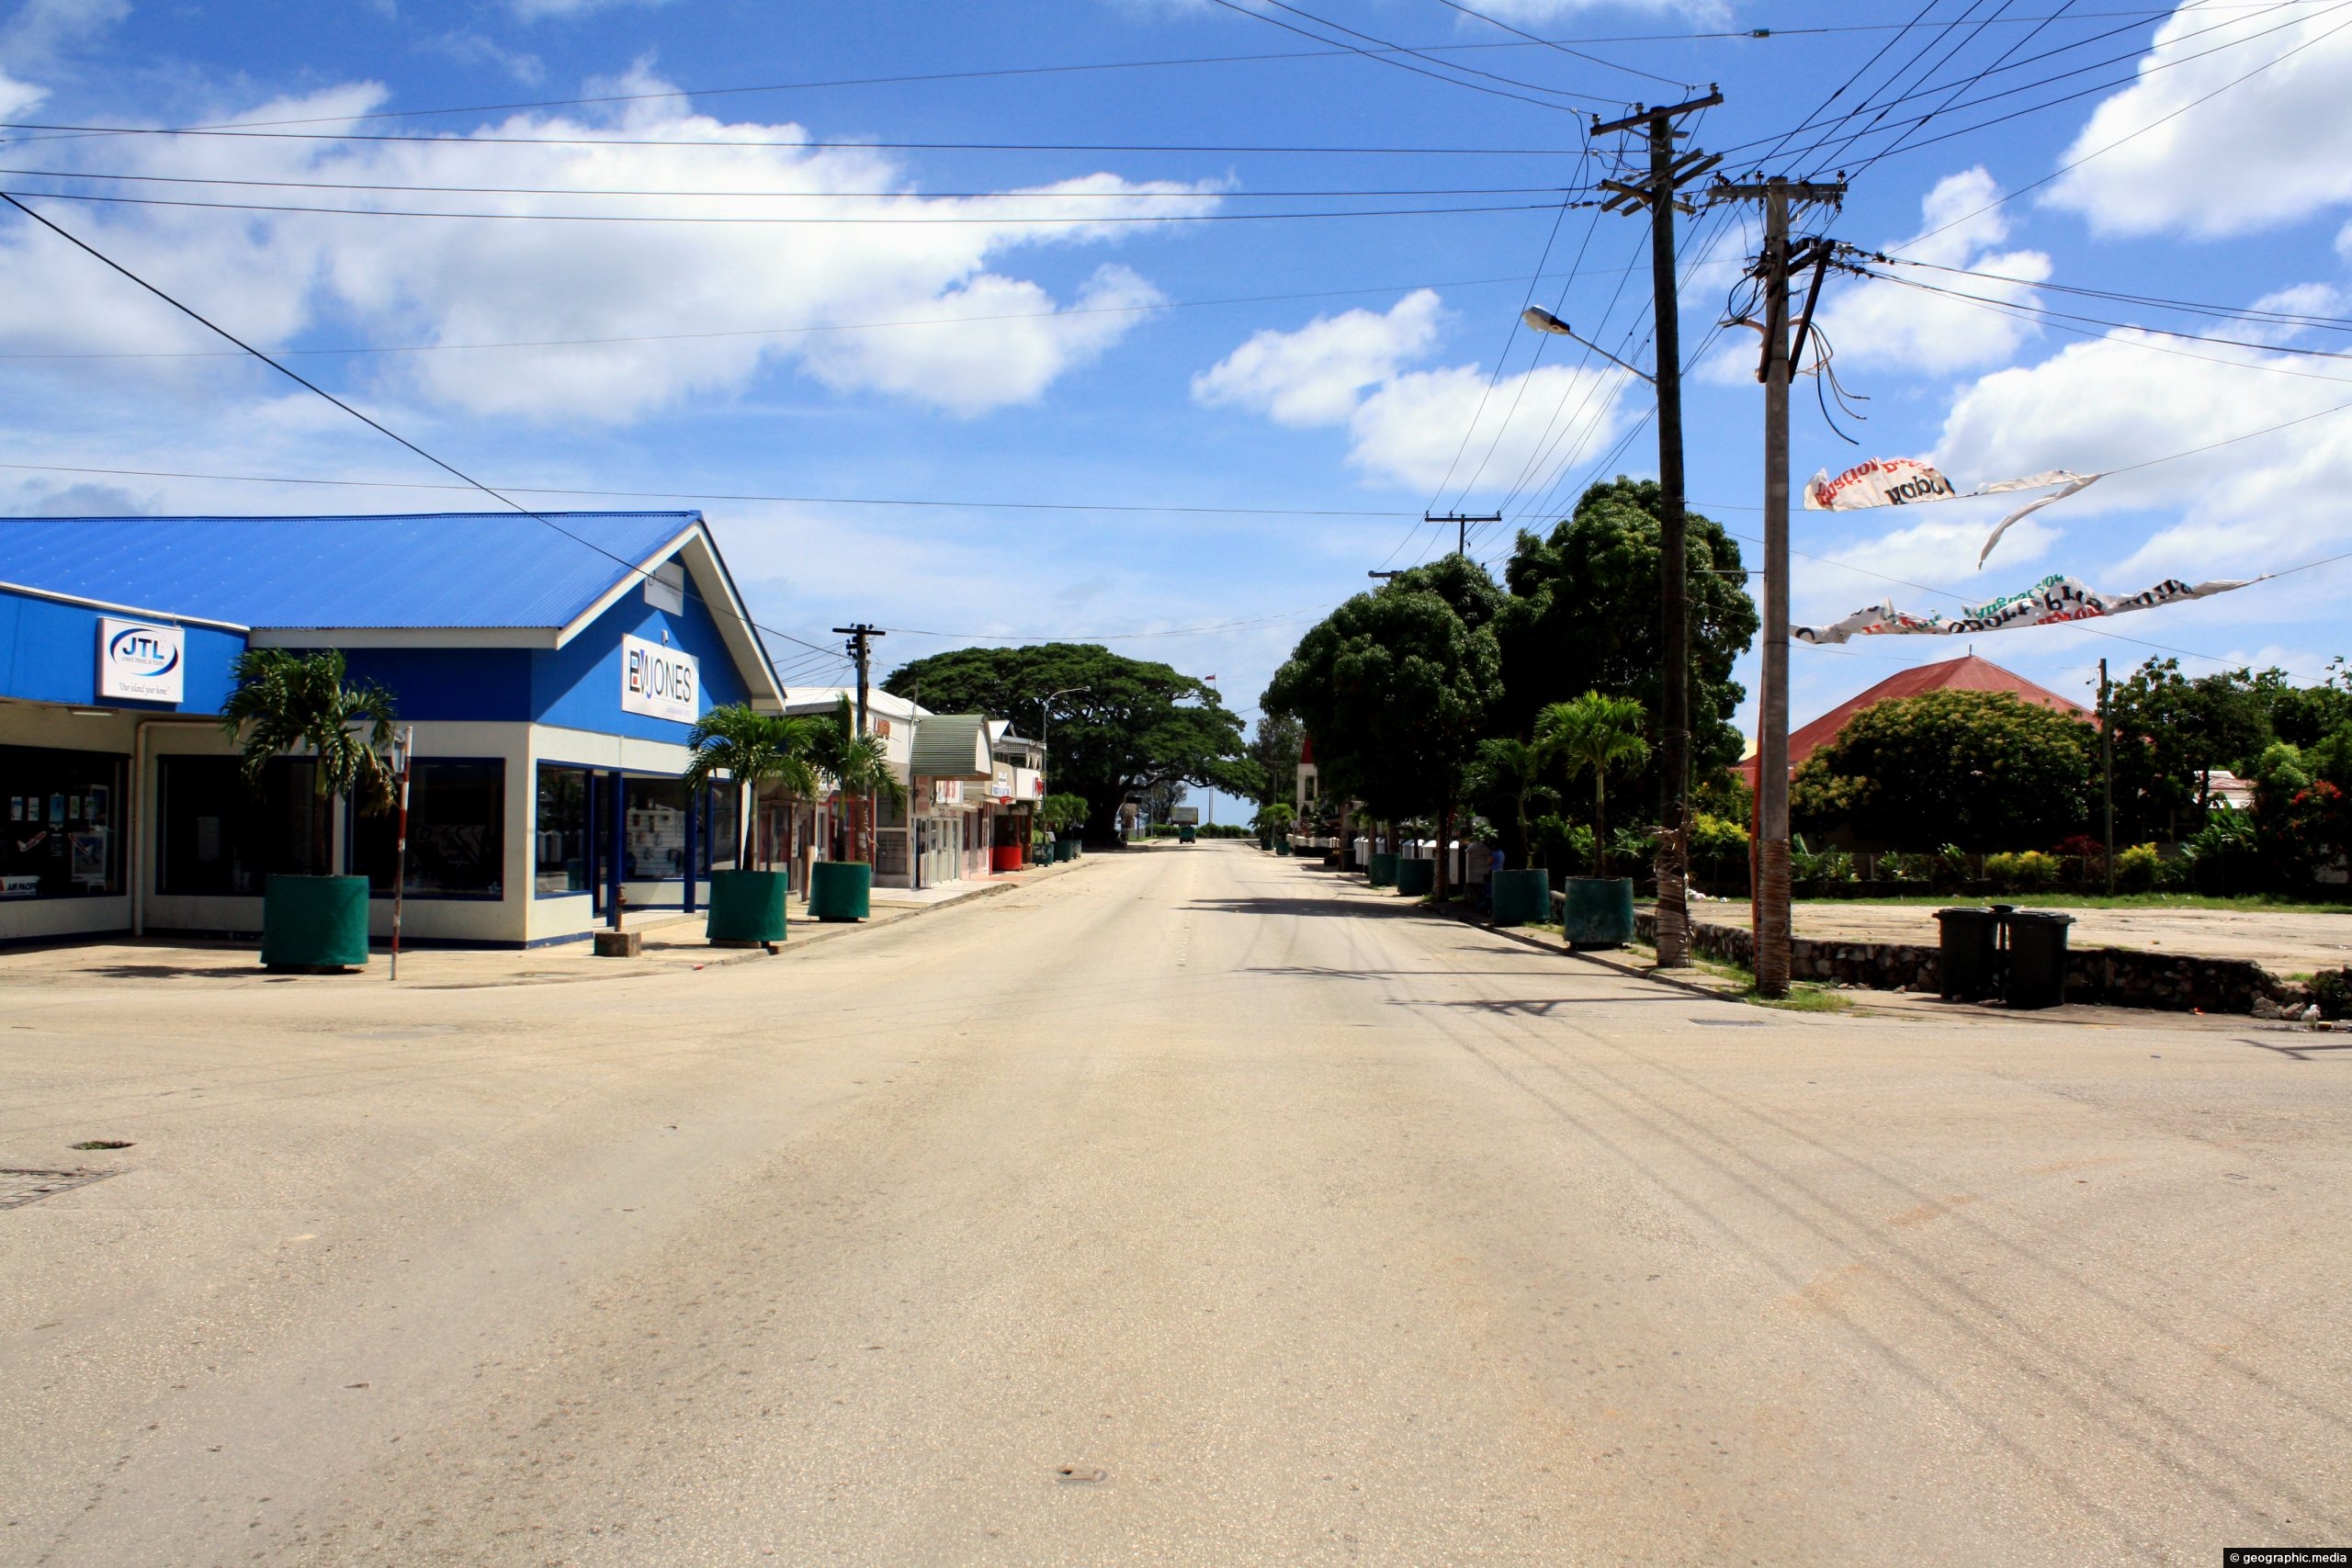 Taufa'ahau Road Tonga on Sunday